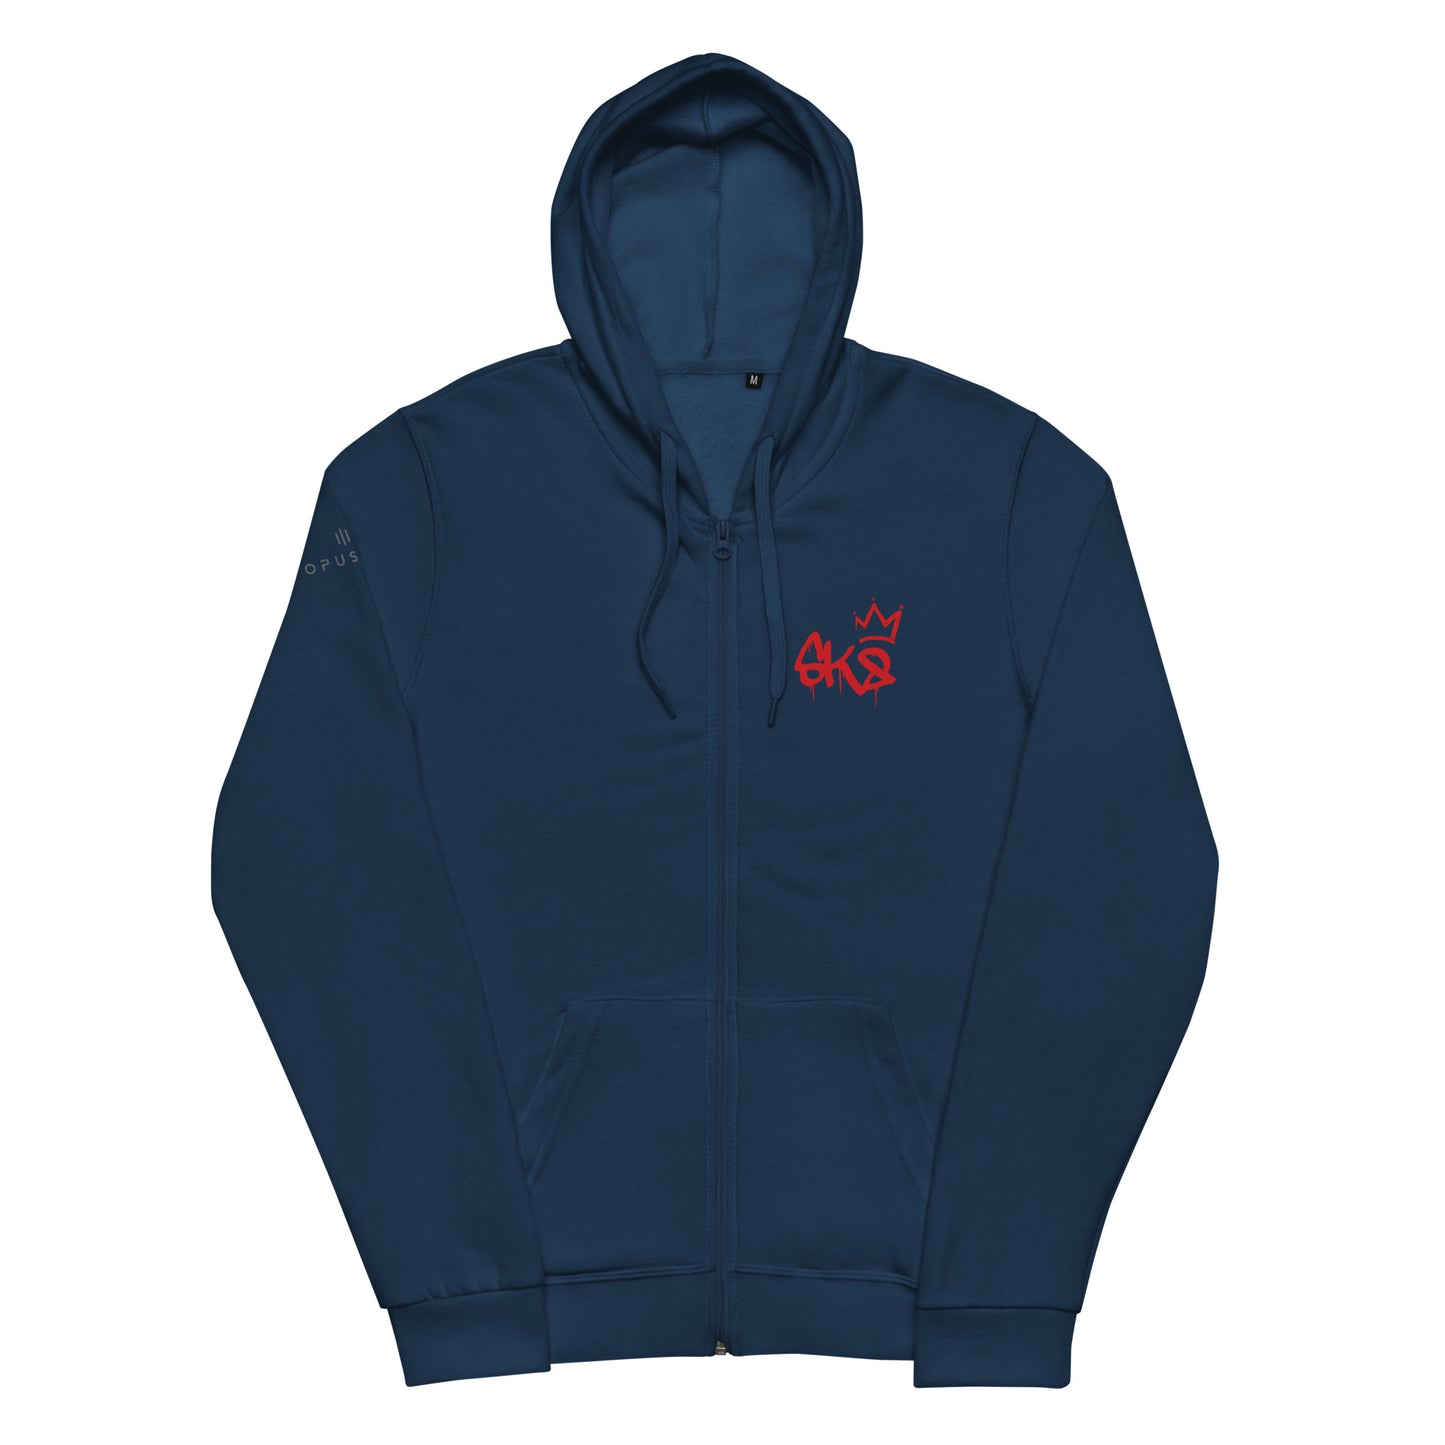 SK8 (v1) Unisex zip hoodie